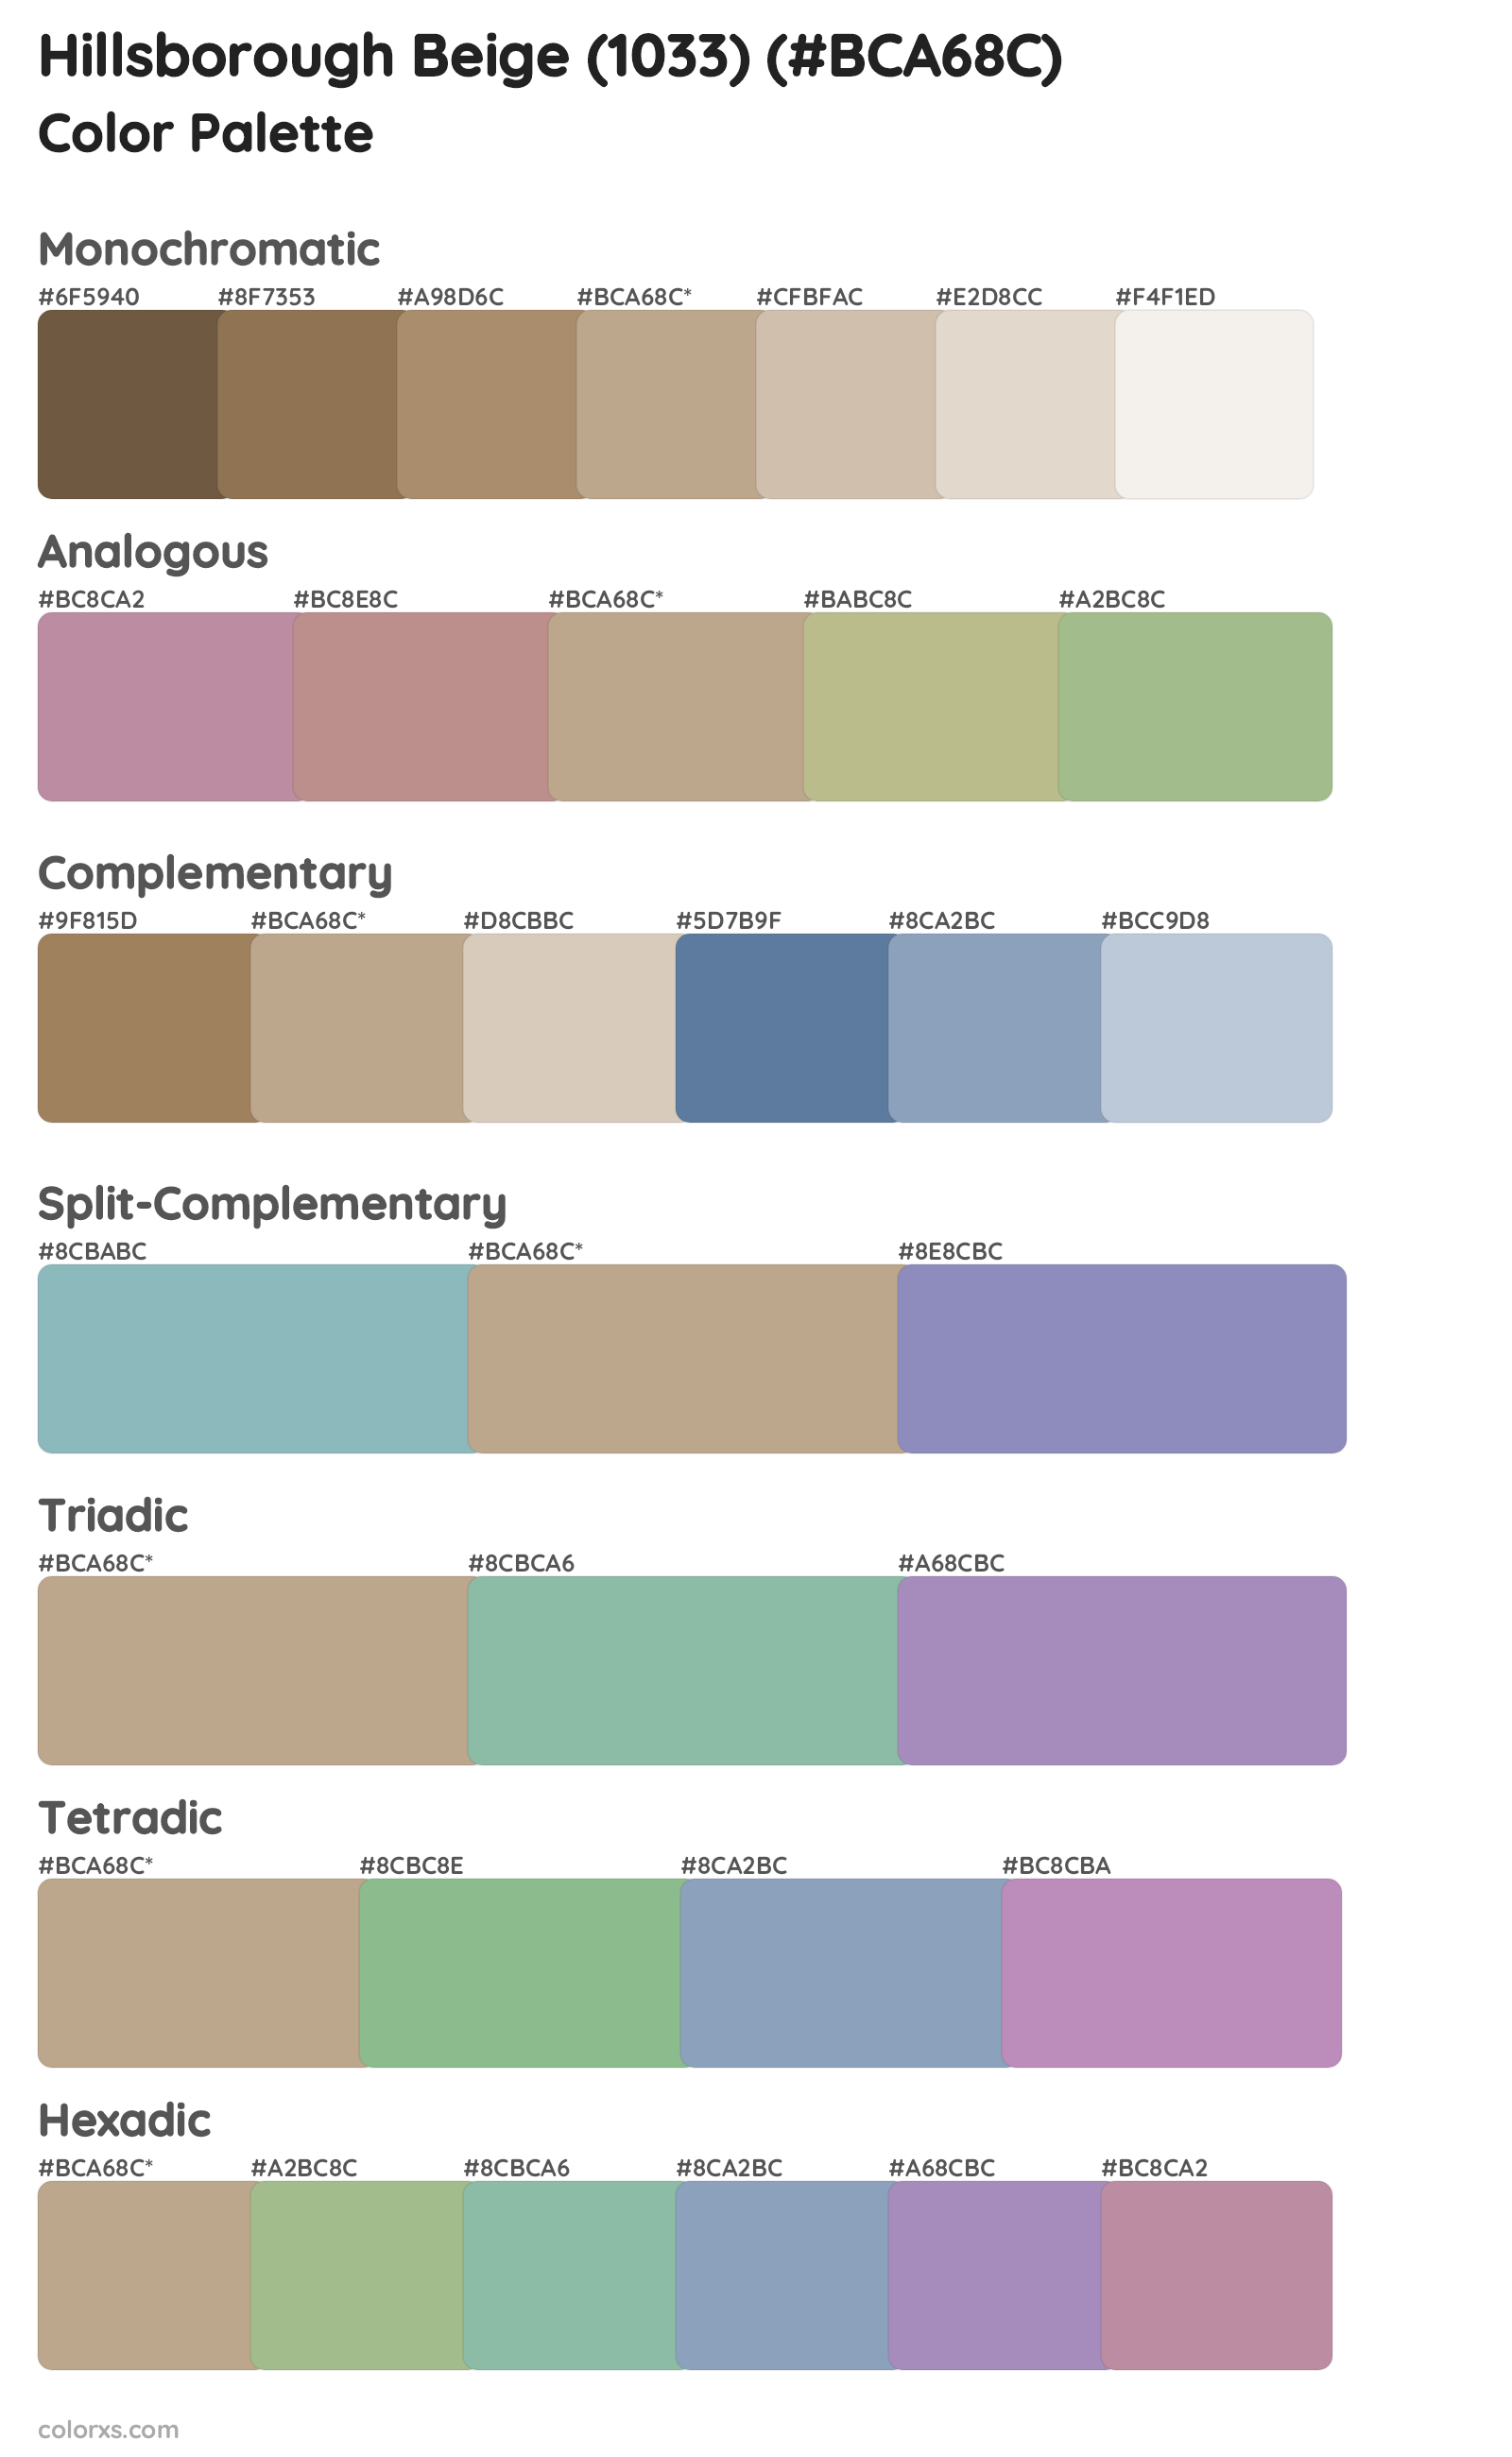 Hillsborough Beige (1033) Color Scheme Palettes